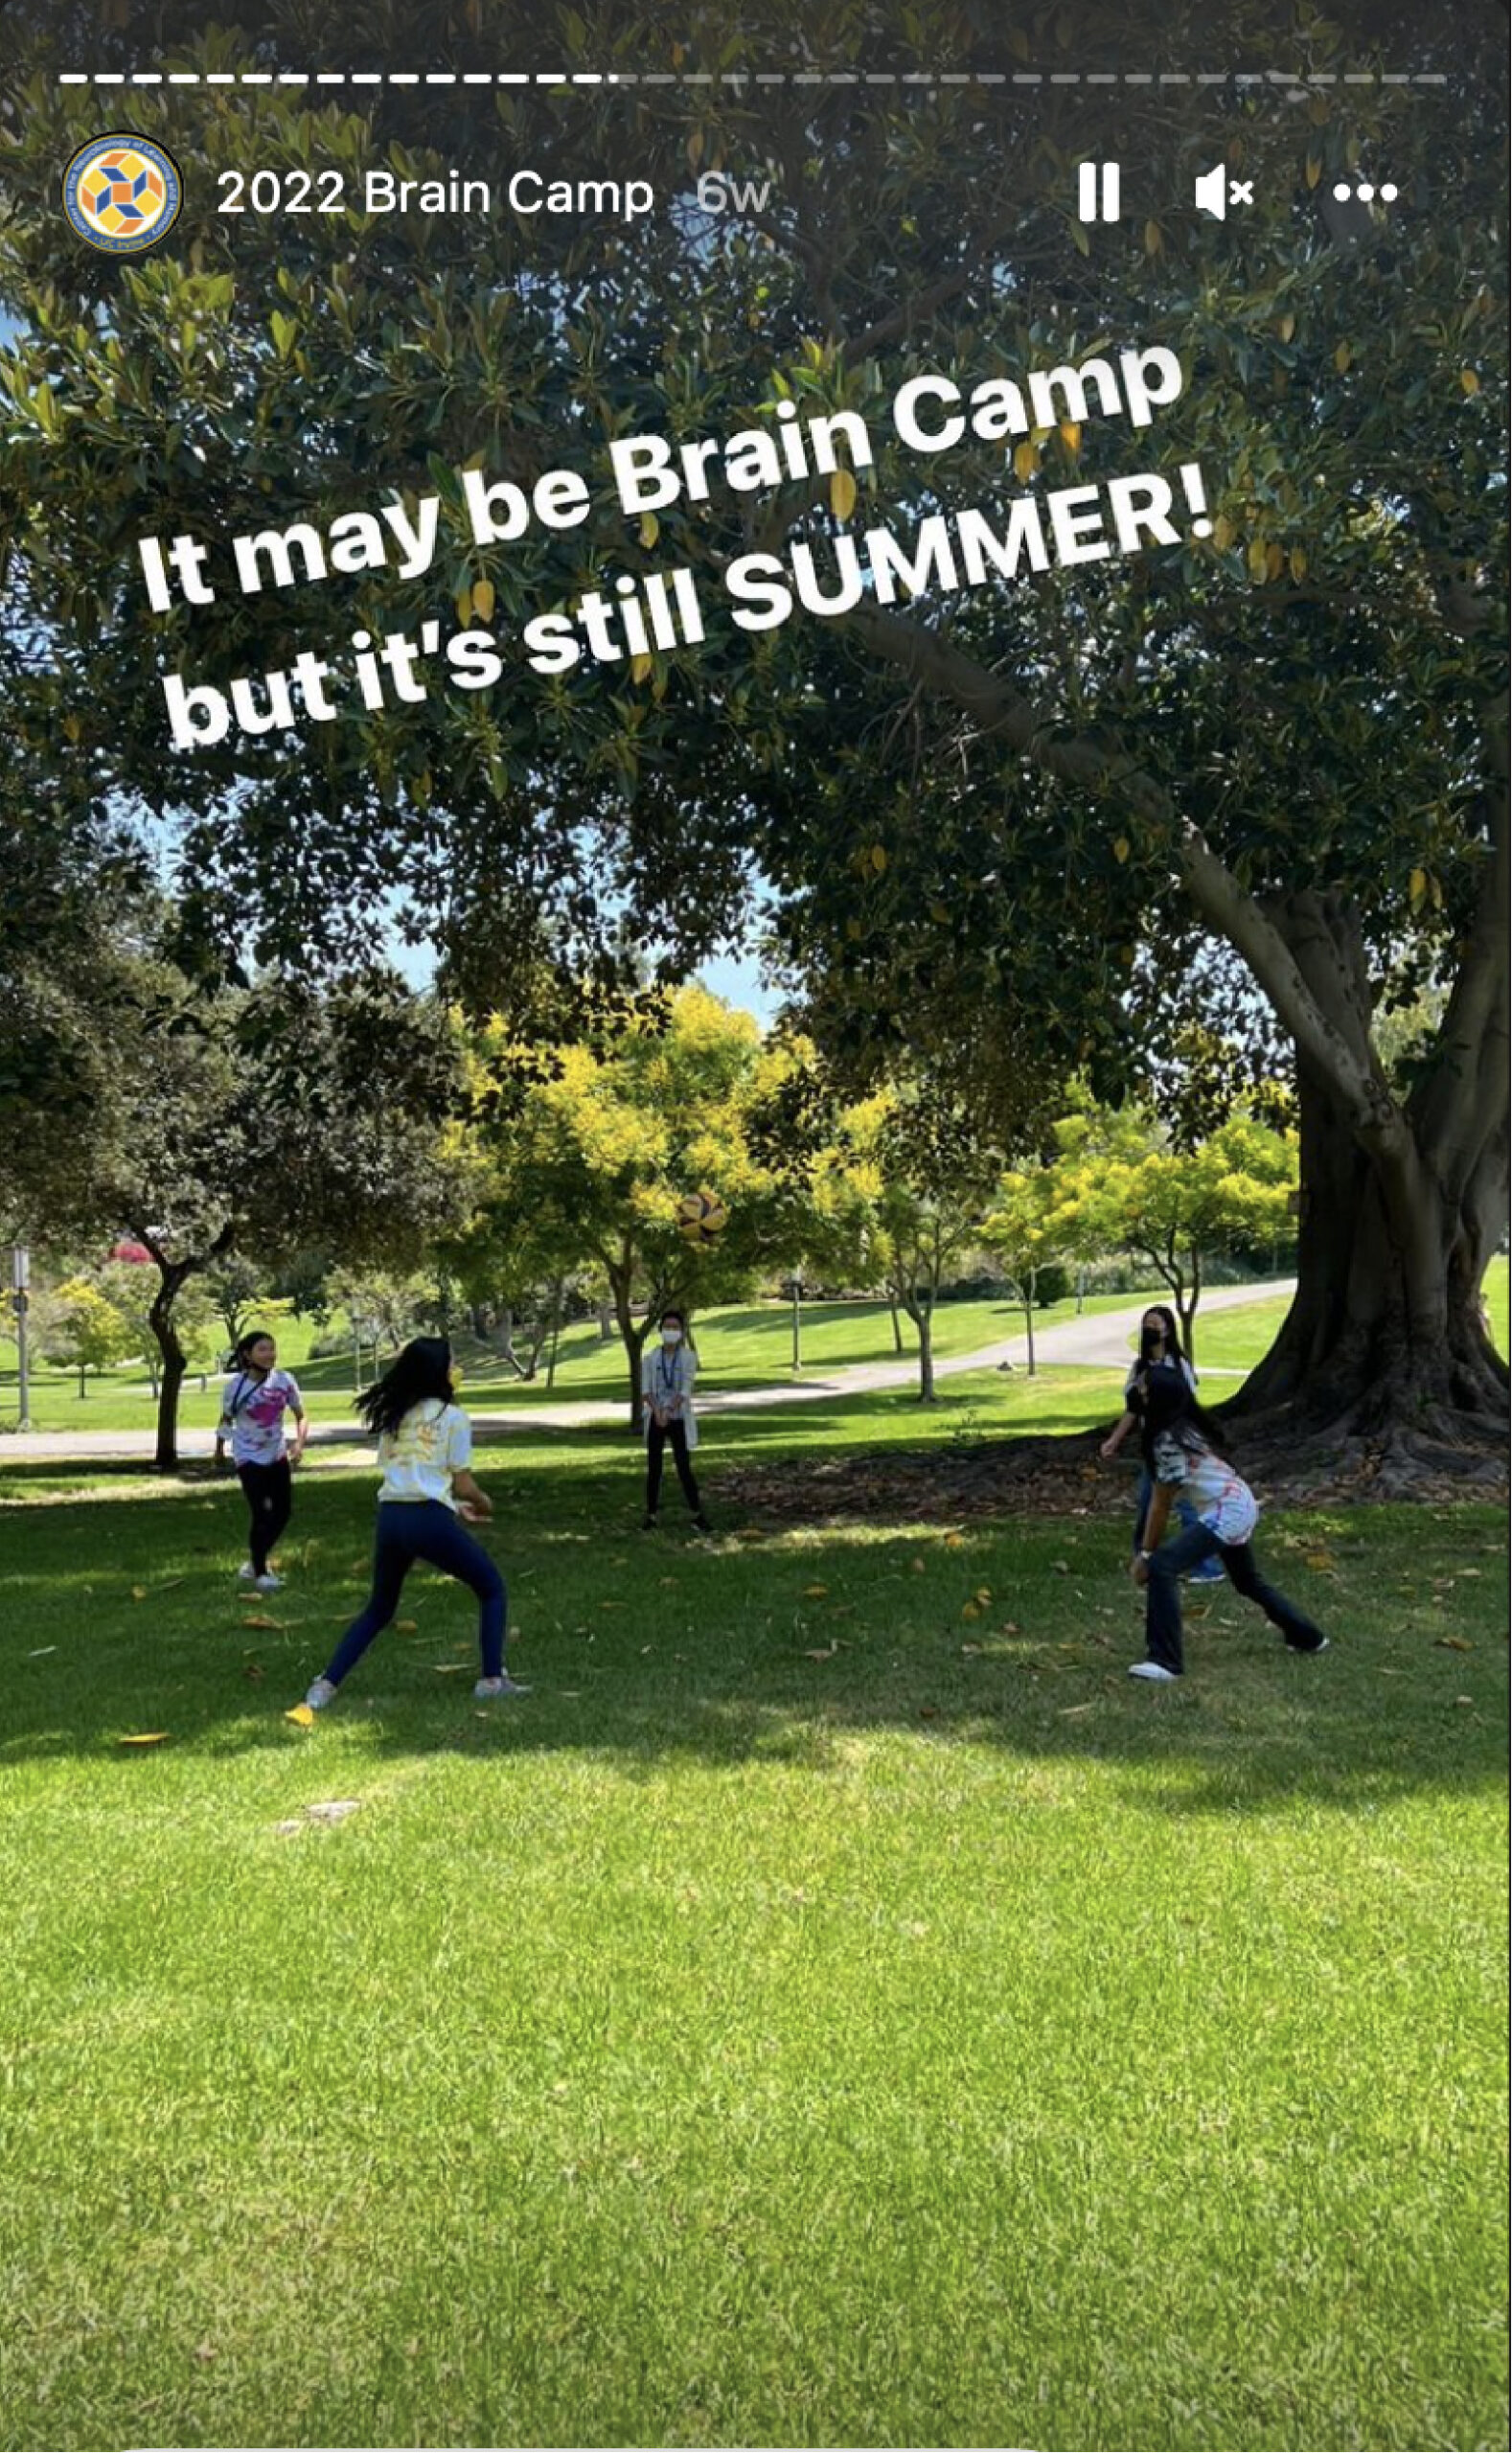 UCI Brain Camp students enjoy summer at Aldrich Park